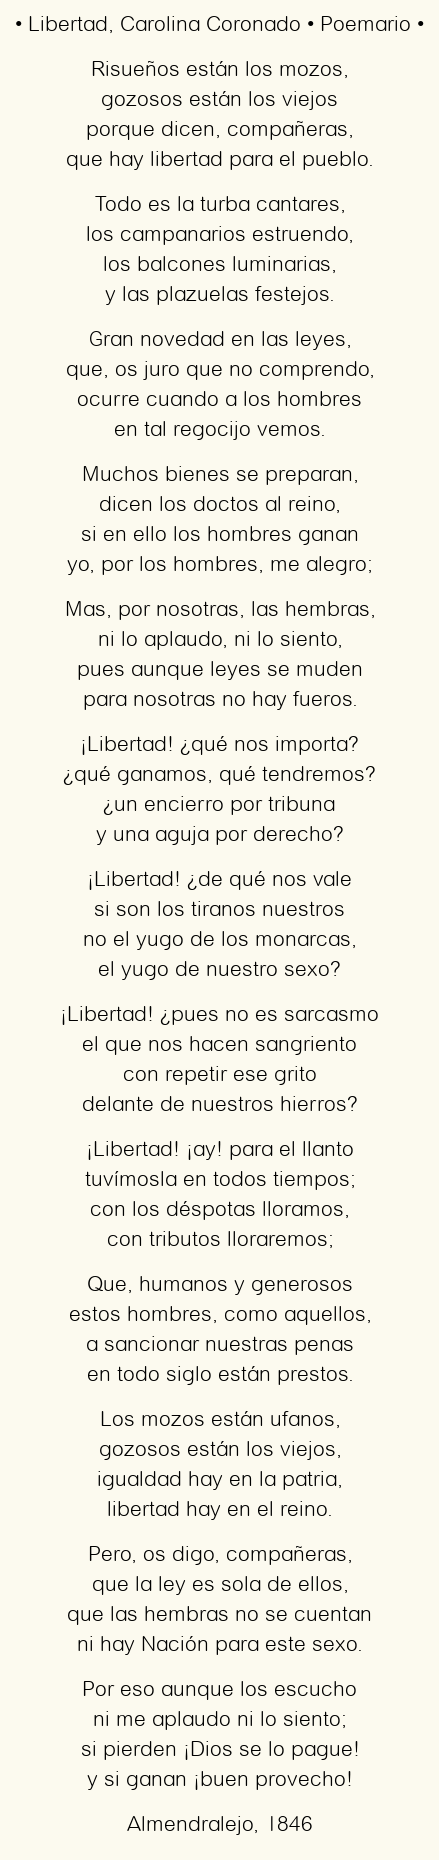 Imagen con el poema Libertad, por Carolina Coronado